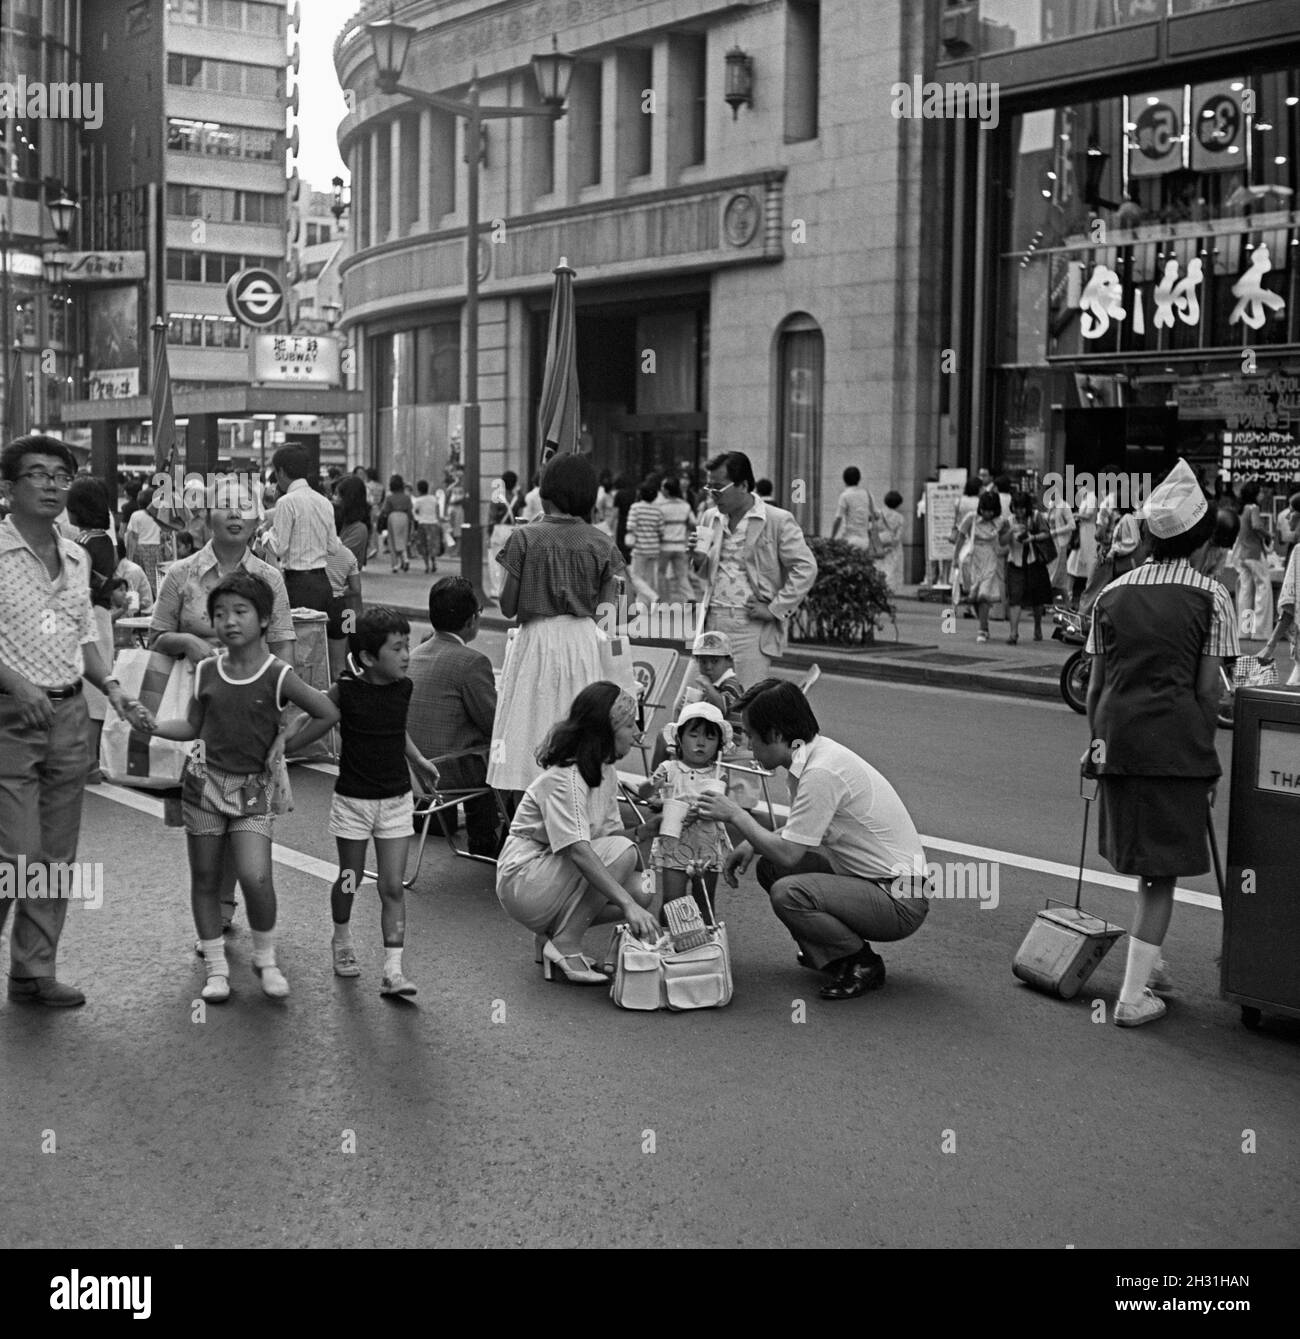 Die Menschen gehen die Straße hinunter, Tokio, Japan, 2. September 1978 Stockfoto